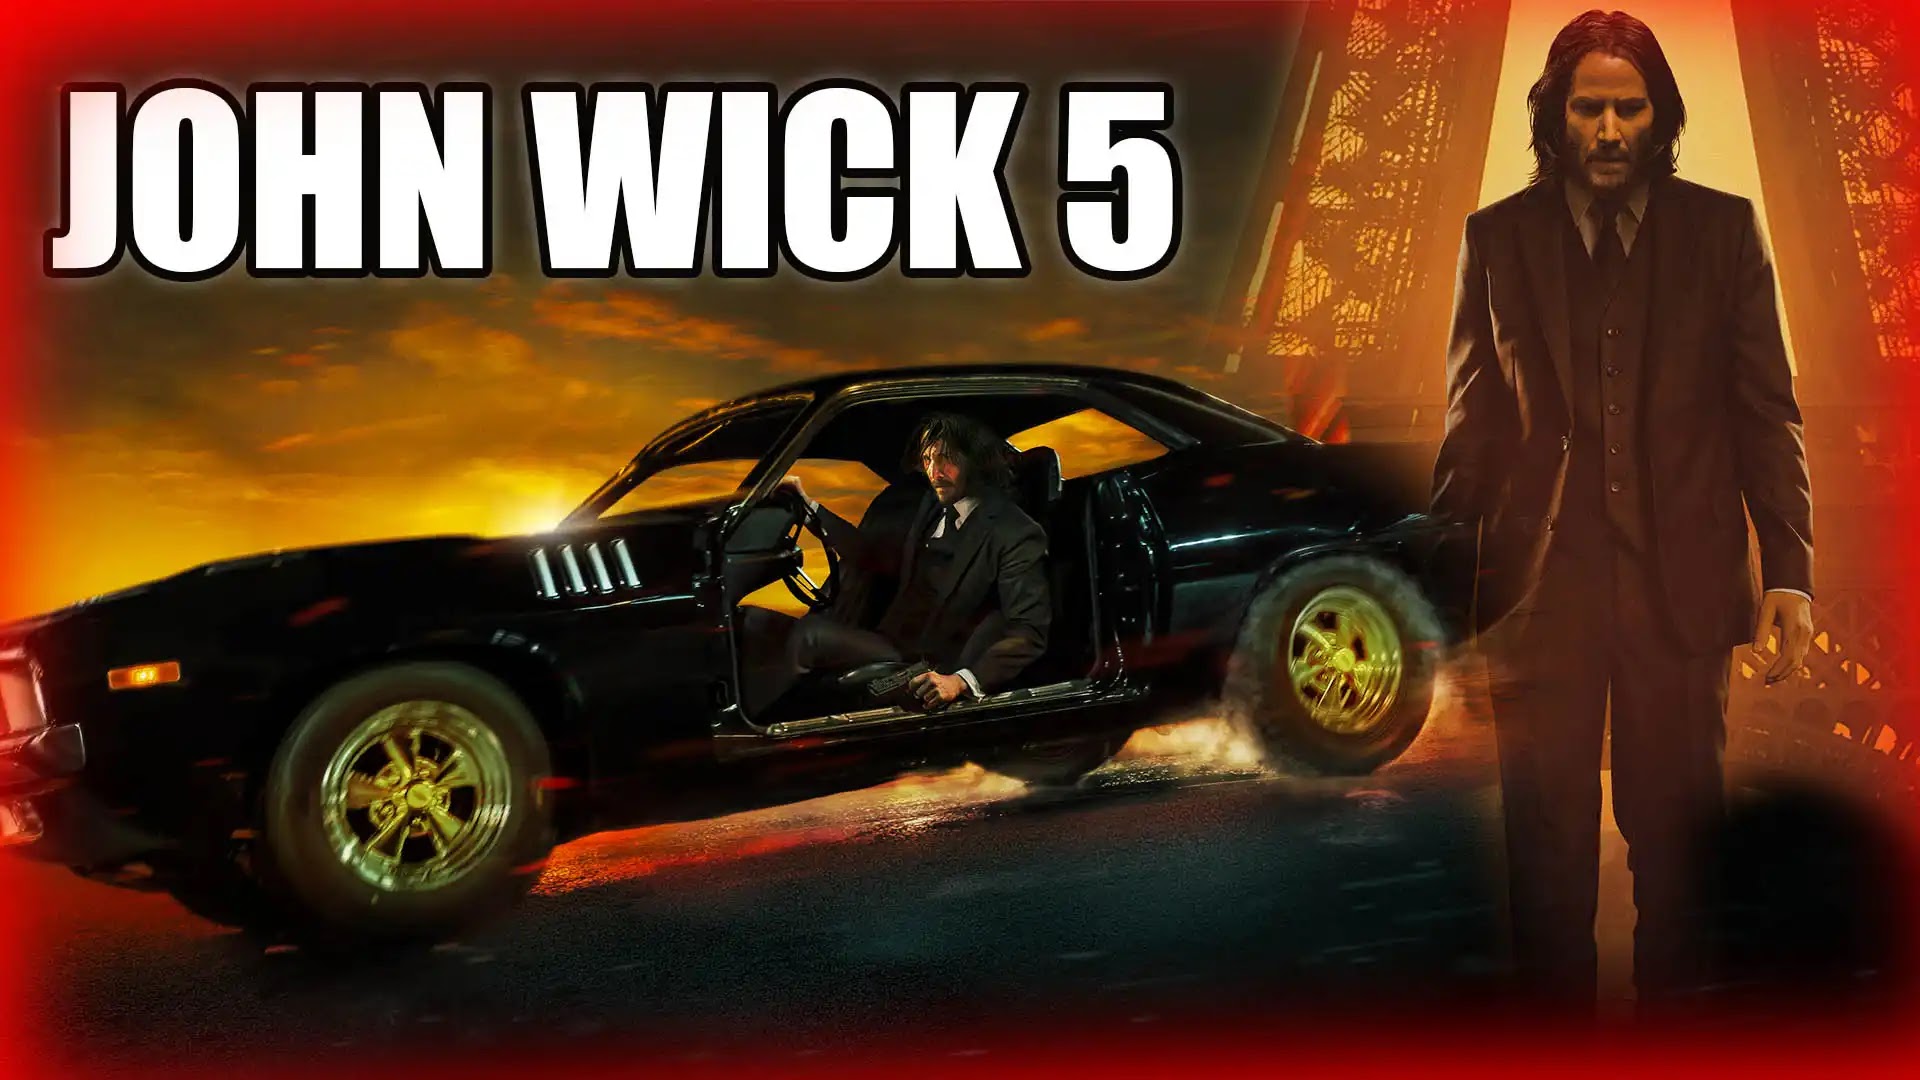 Confirmed! 'John Wick 5' is in early development